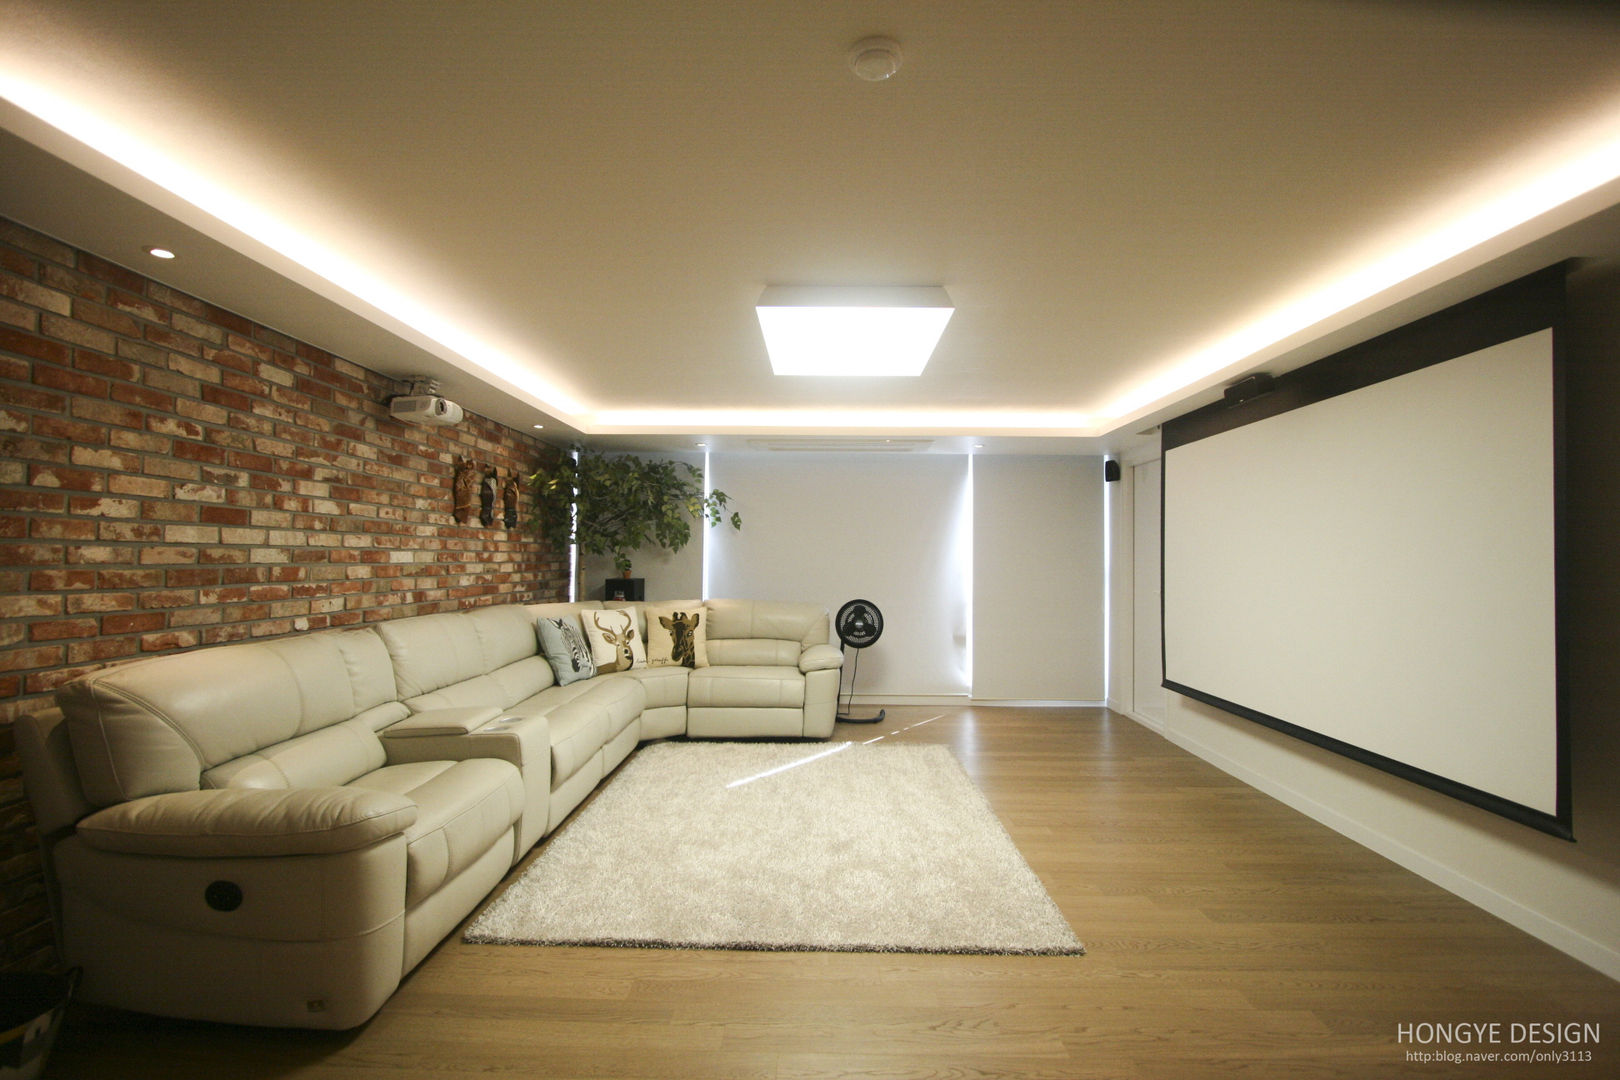 120인치 스크린이 우리집 거실에, 40py 모던한 인테리어 , 홍예디자인 홍예디자인 Living room